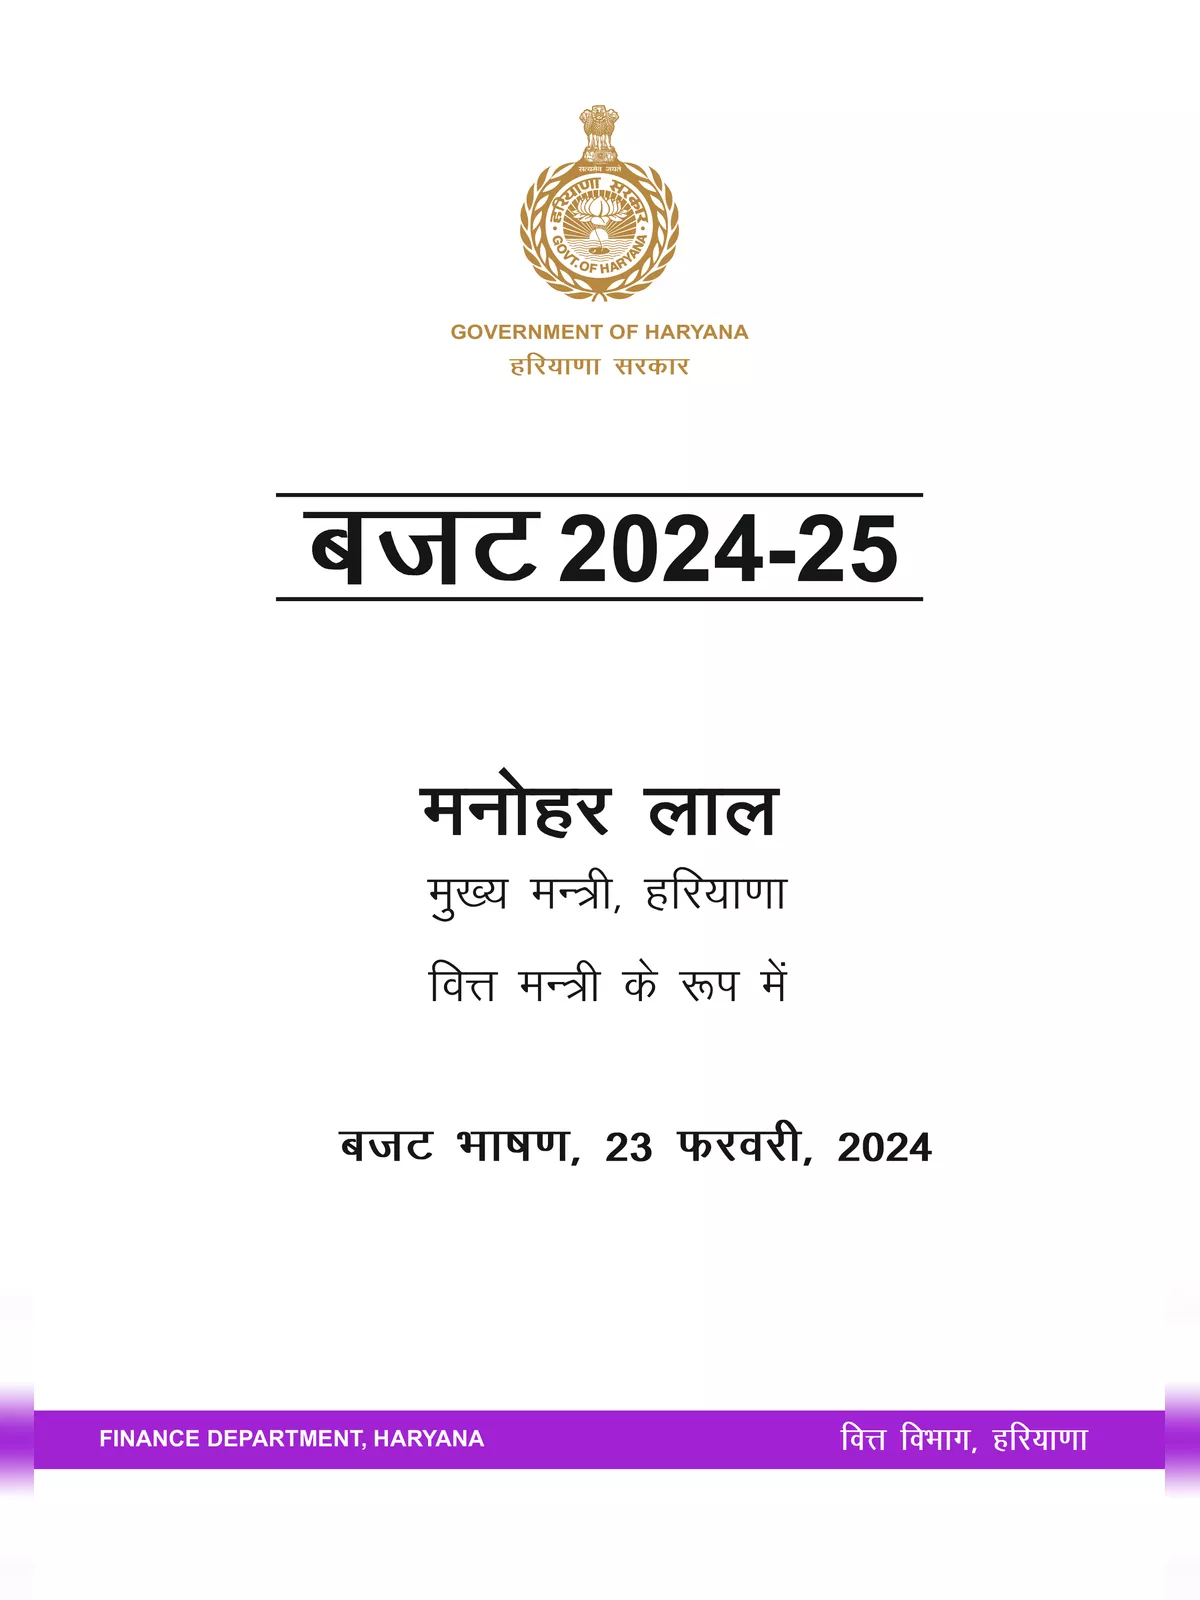 Haryana Budget 2024